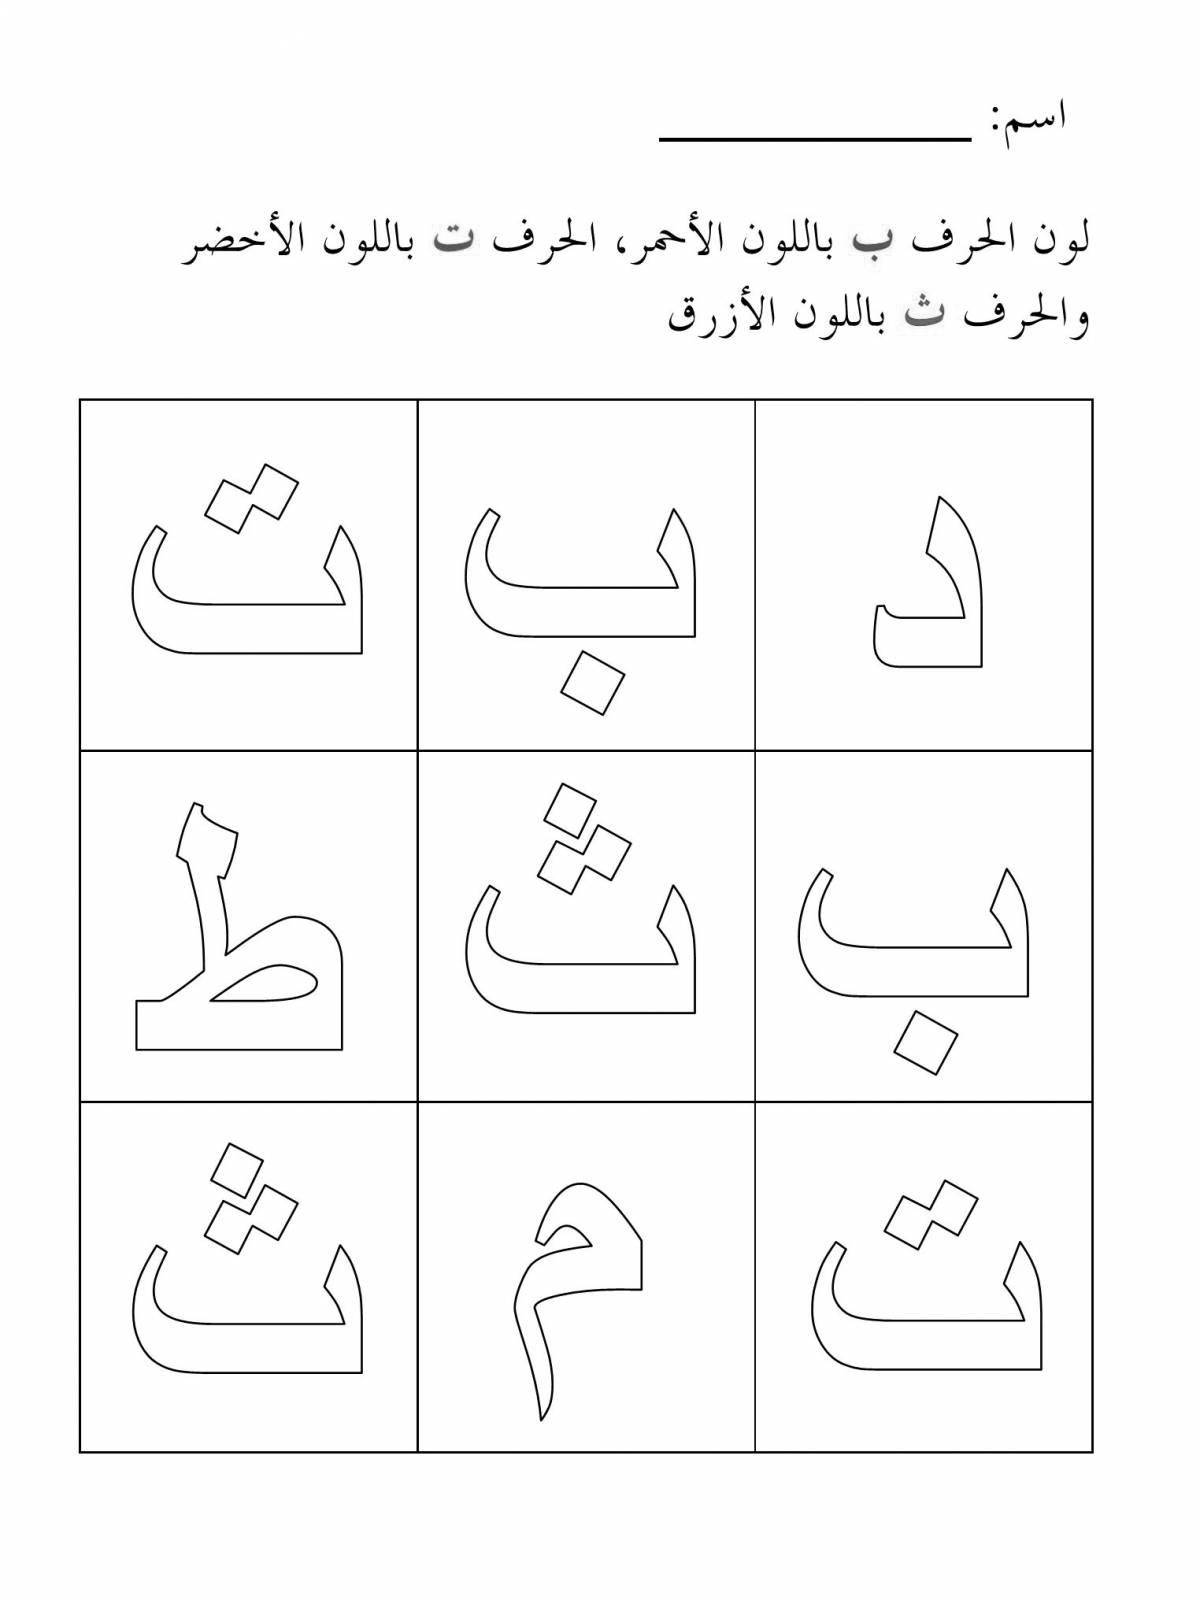 Раскраска волшебный арабский алфавит